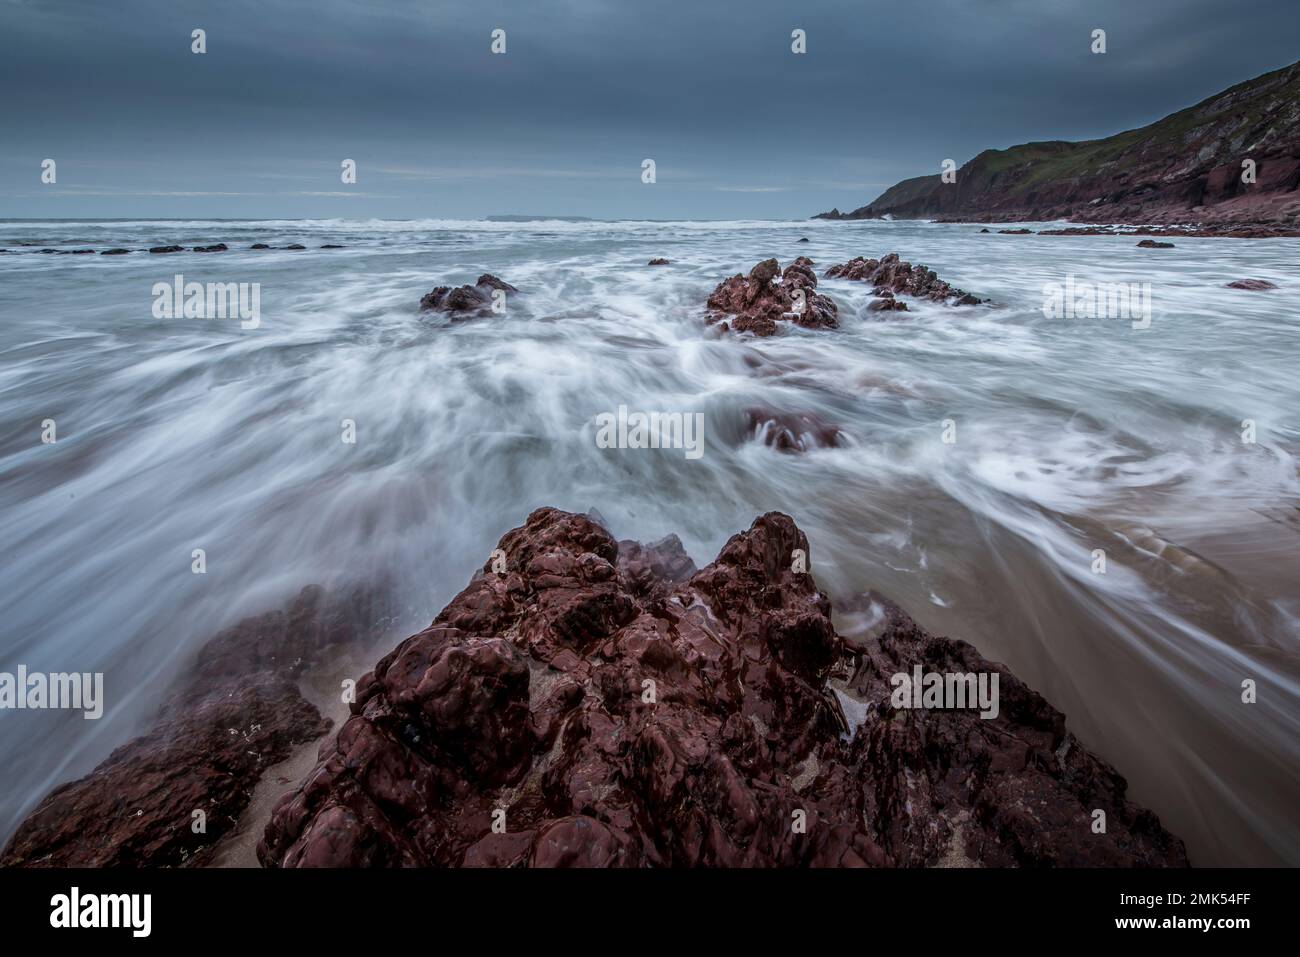 Plage de West Dale, Pembrokeshire. Marée entrante sur les rochers, exposition lente pour l'eau en mouvement et les vagues. Banque D'Images